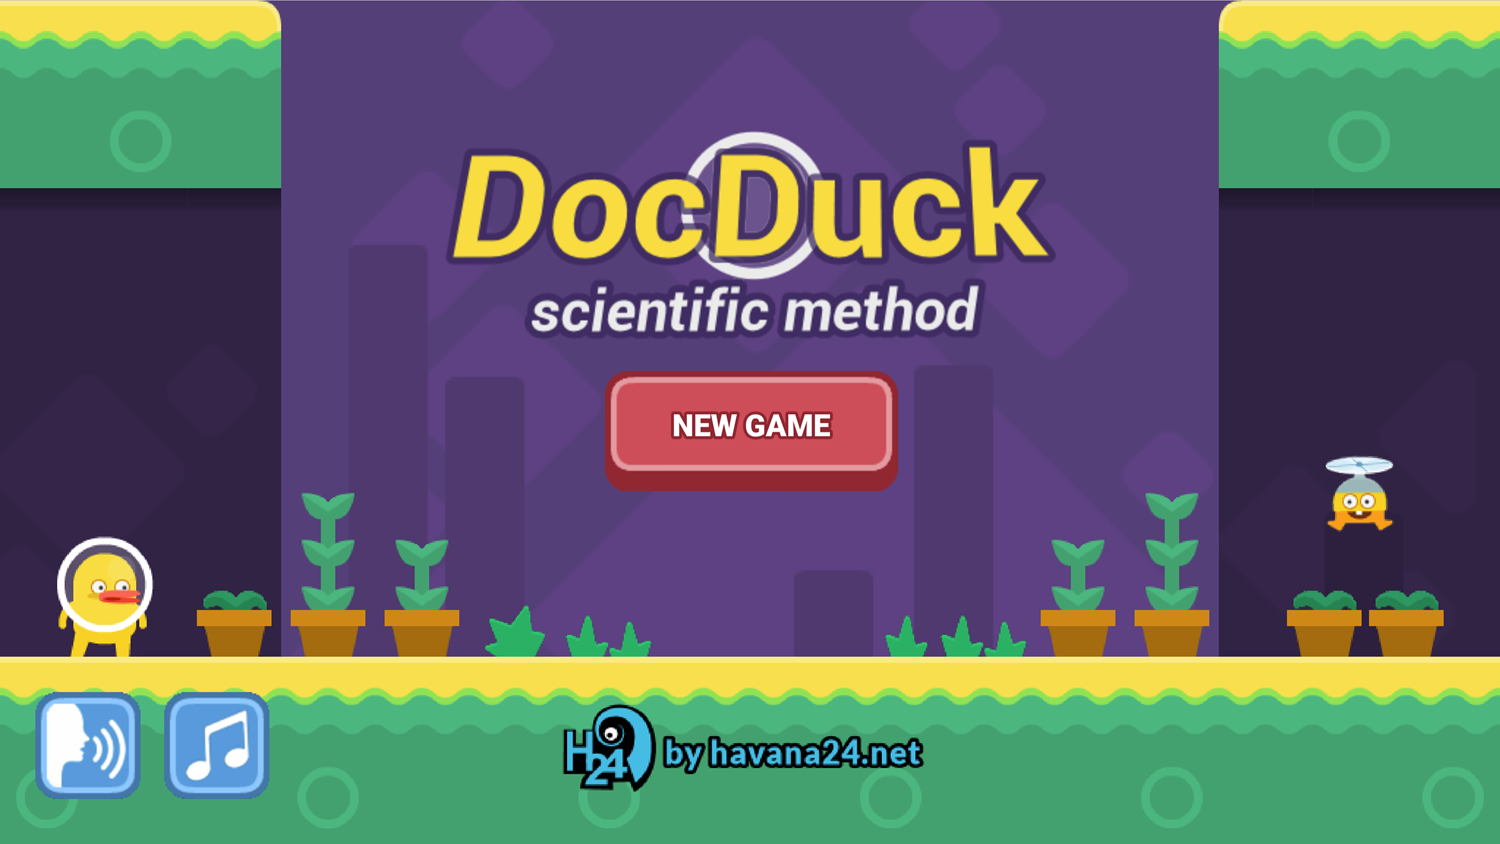 DocDuck Scientific Method Game Welcome Screen Screenshot.